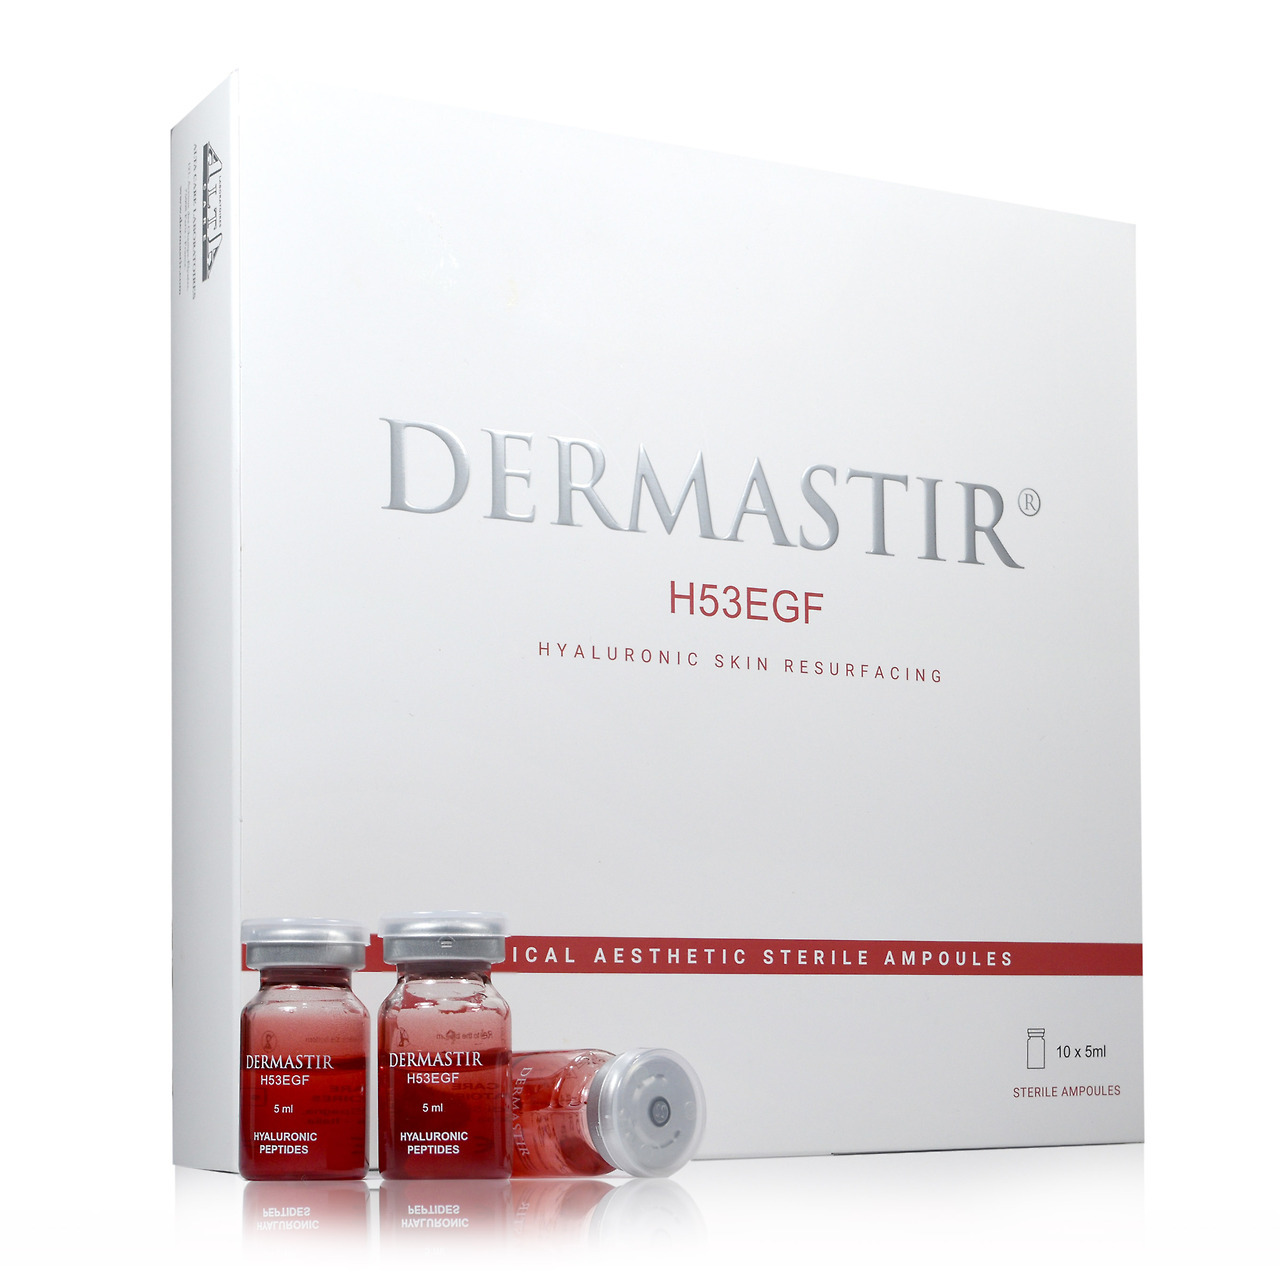 DERMASTIR H53EGF Hyaluronic skin resurfacing.jpg